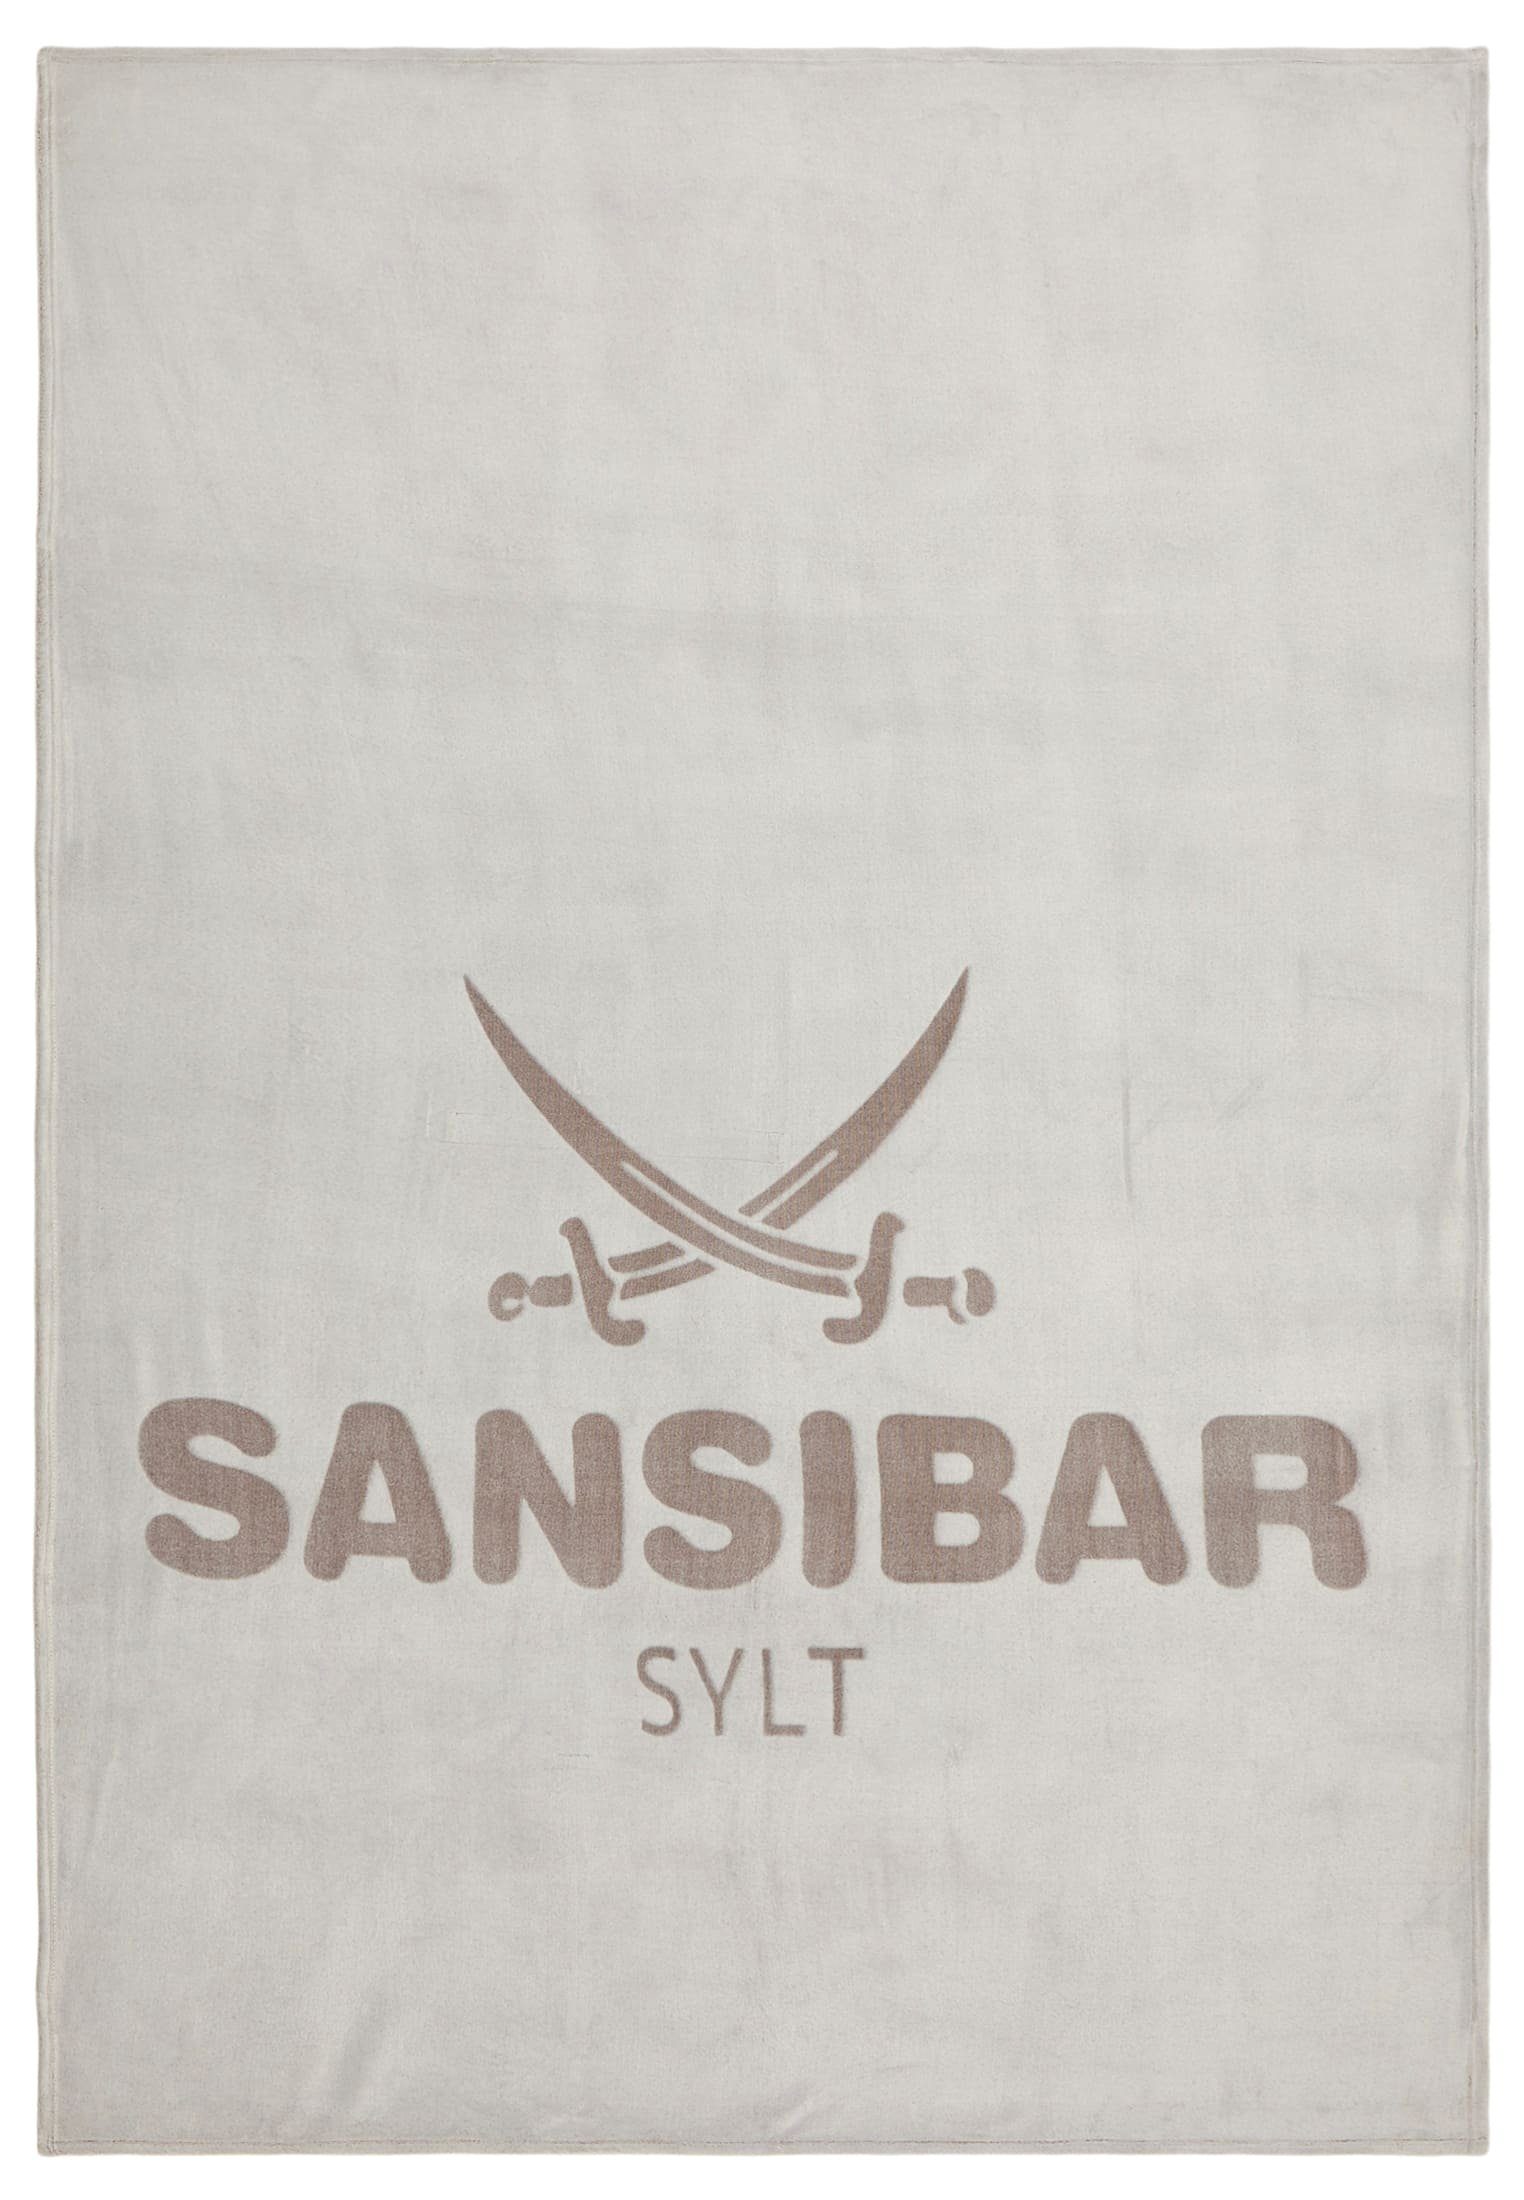 Sansibar Sylt Wohndecke & Decke online kaufen | OTTO